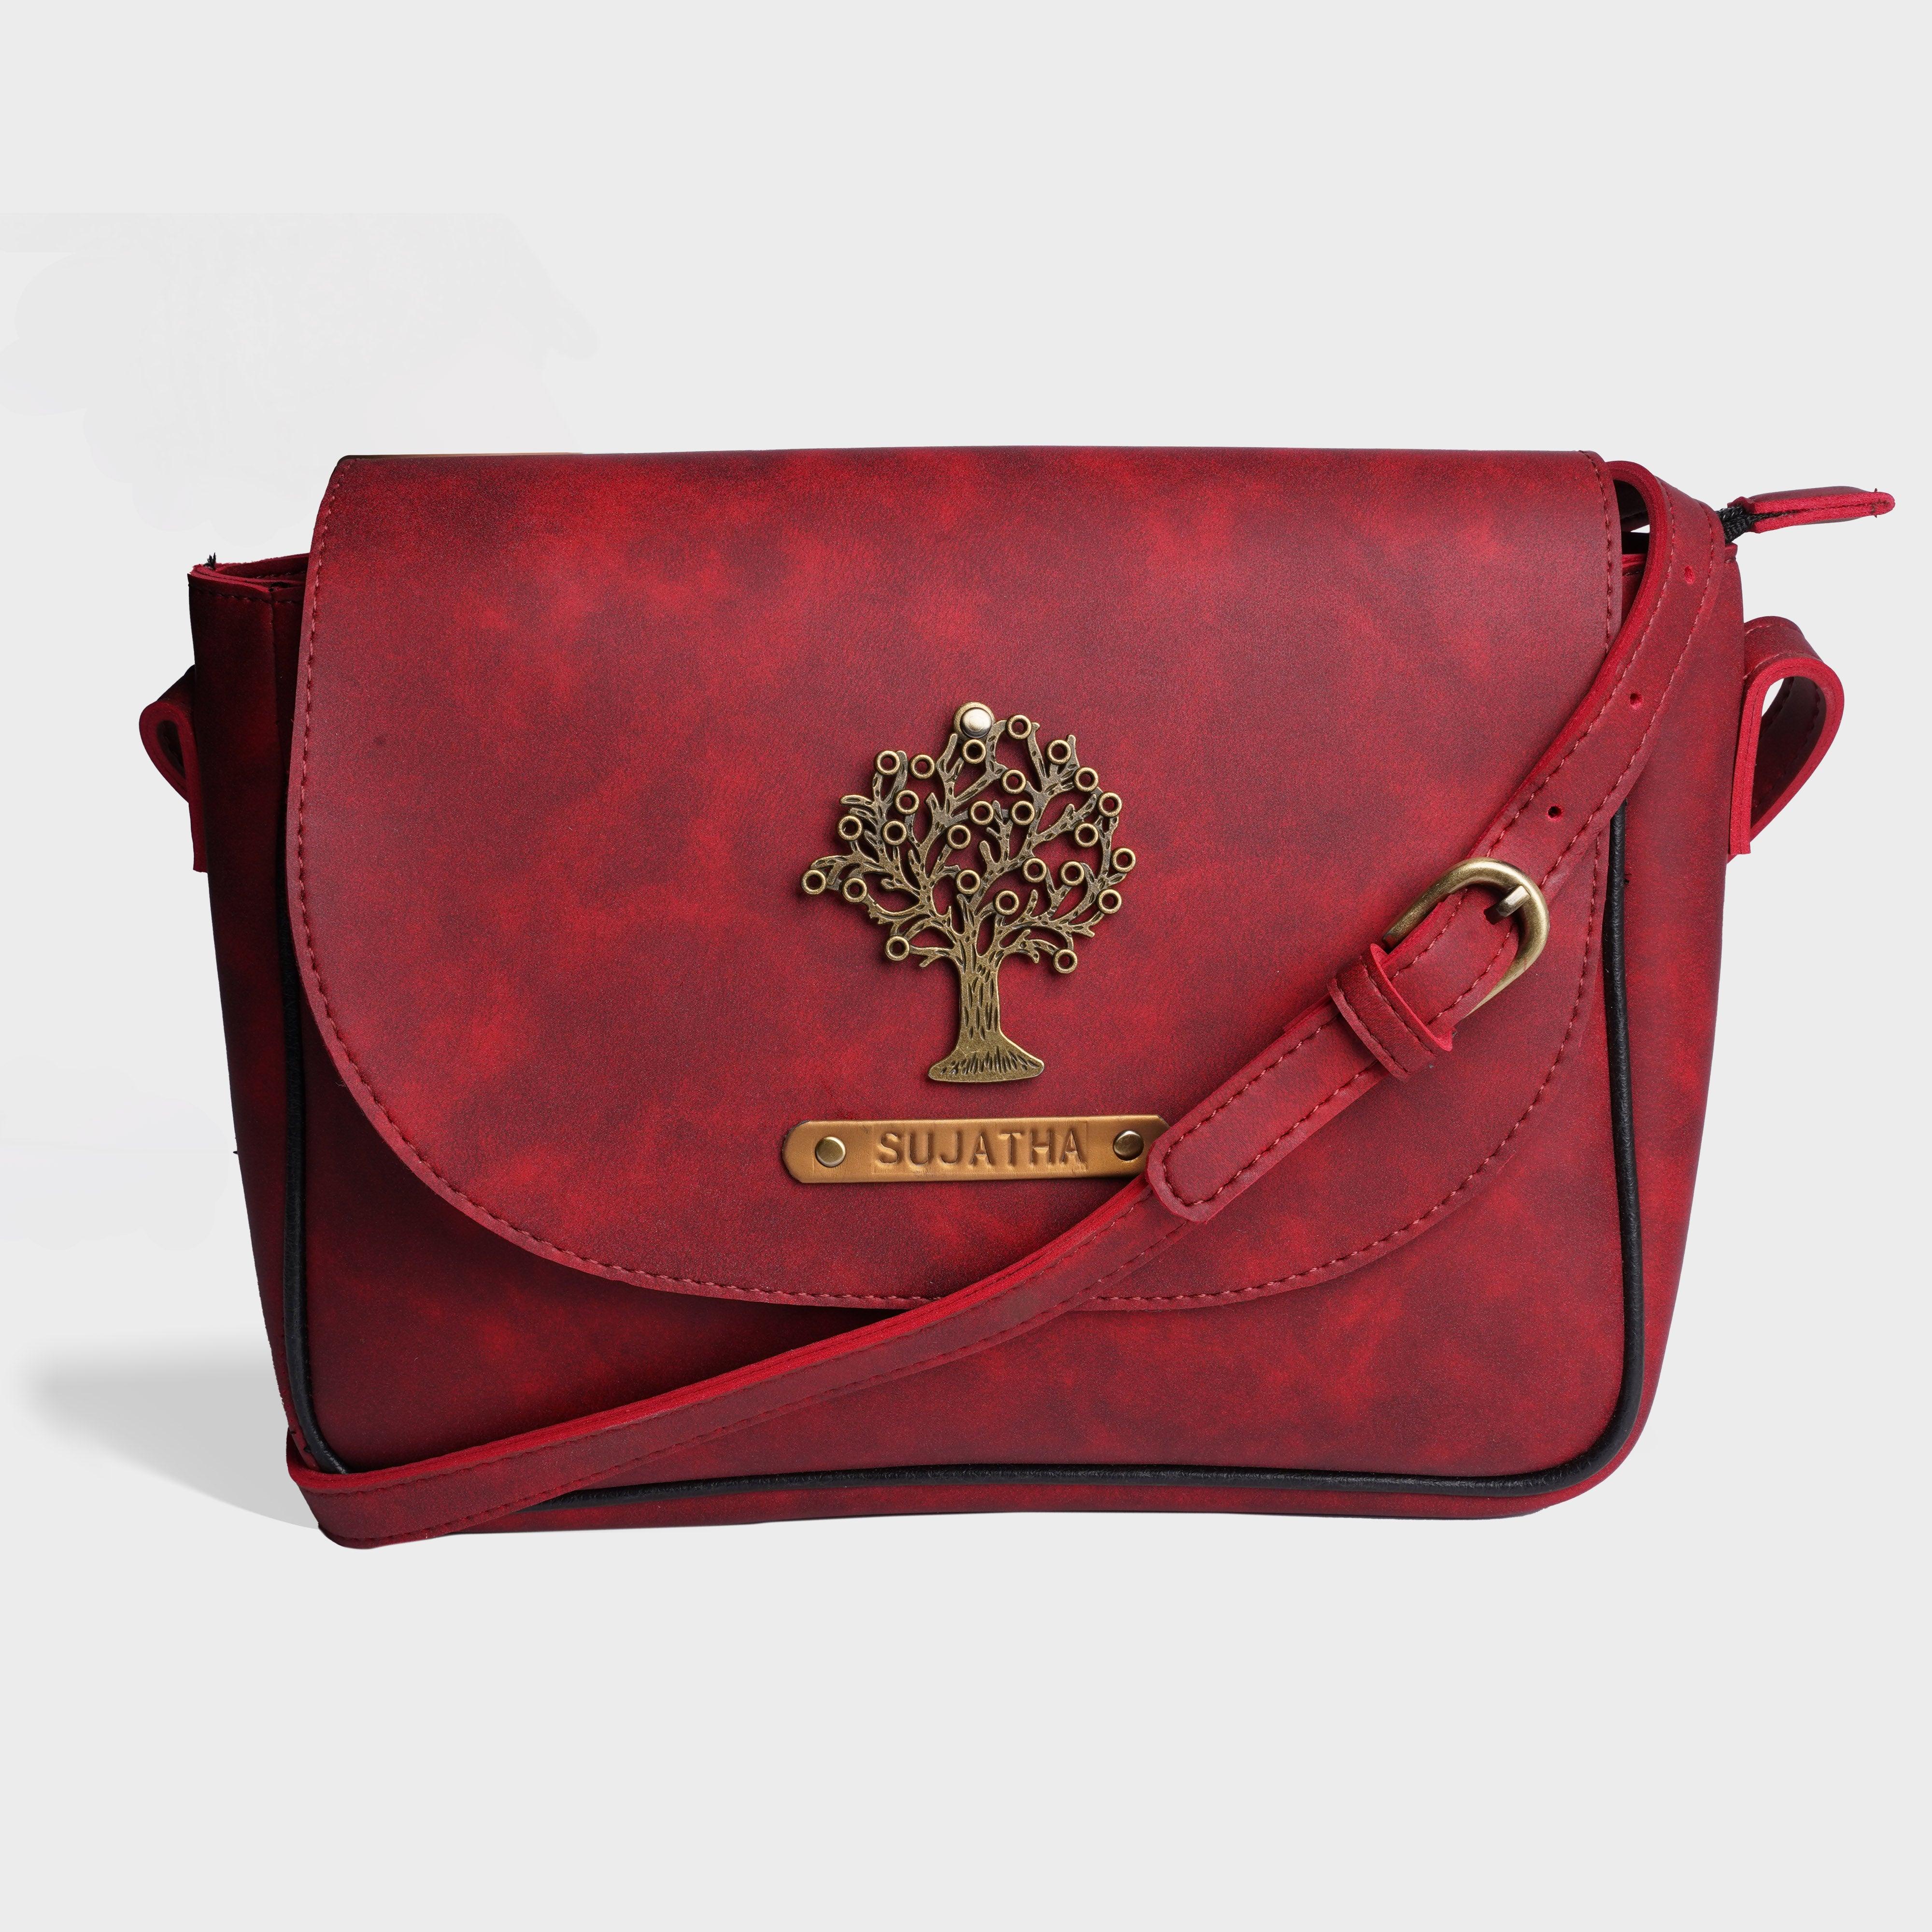 Personalised Satchel Crossbody Bag-Cherry - Travelsleek